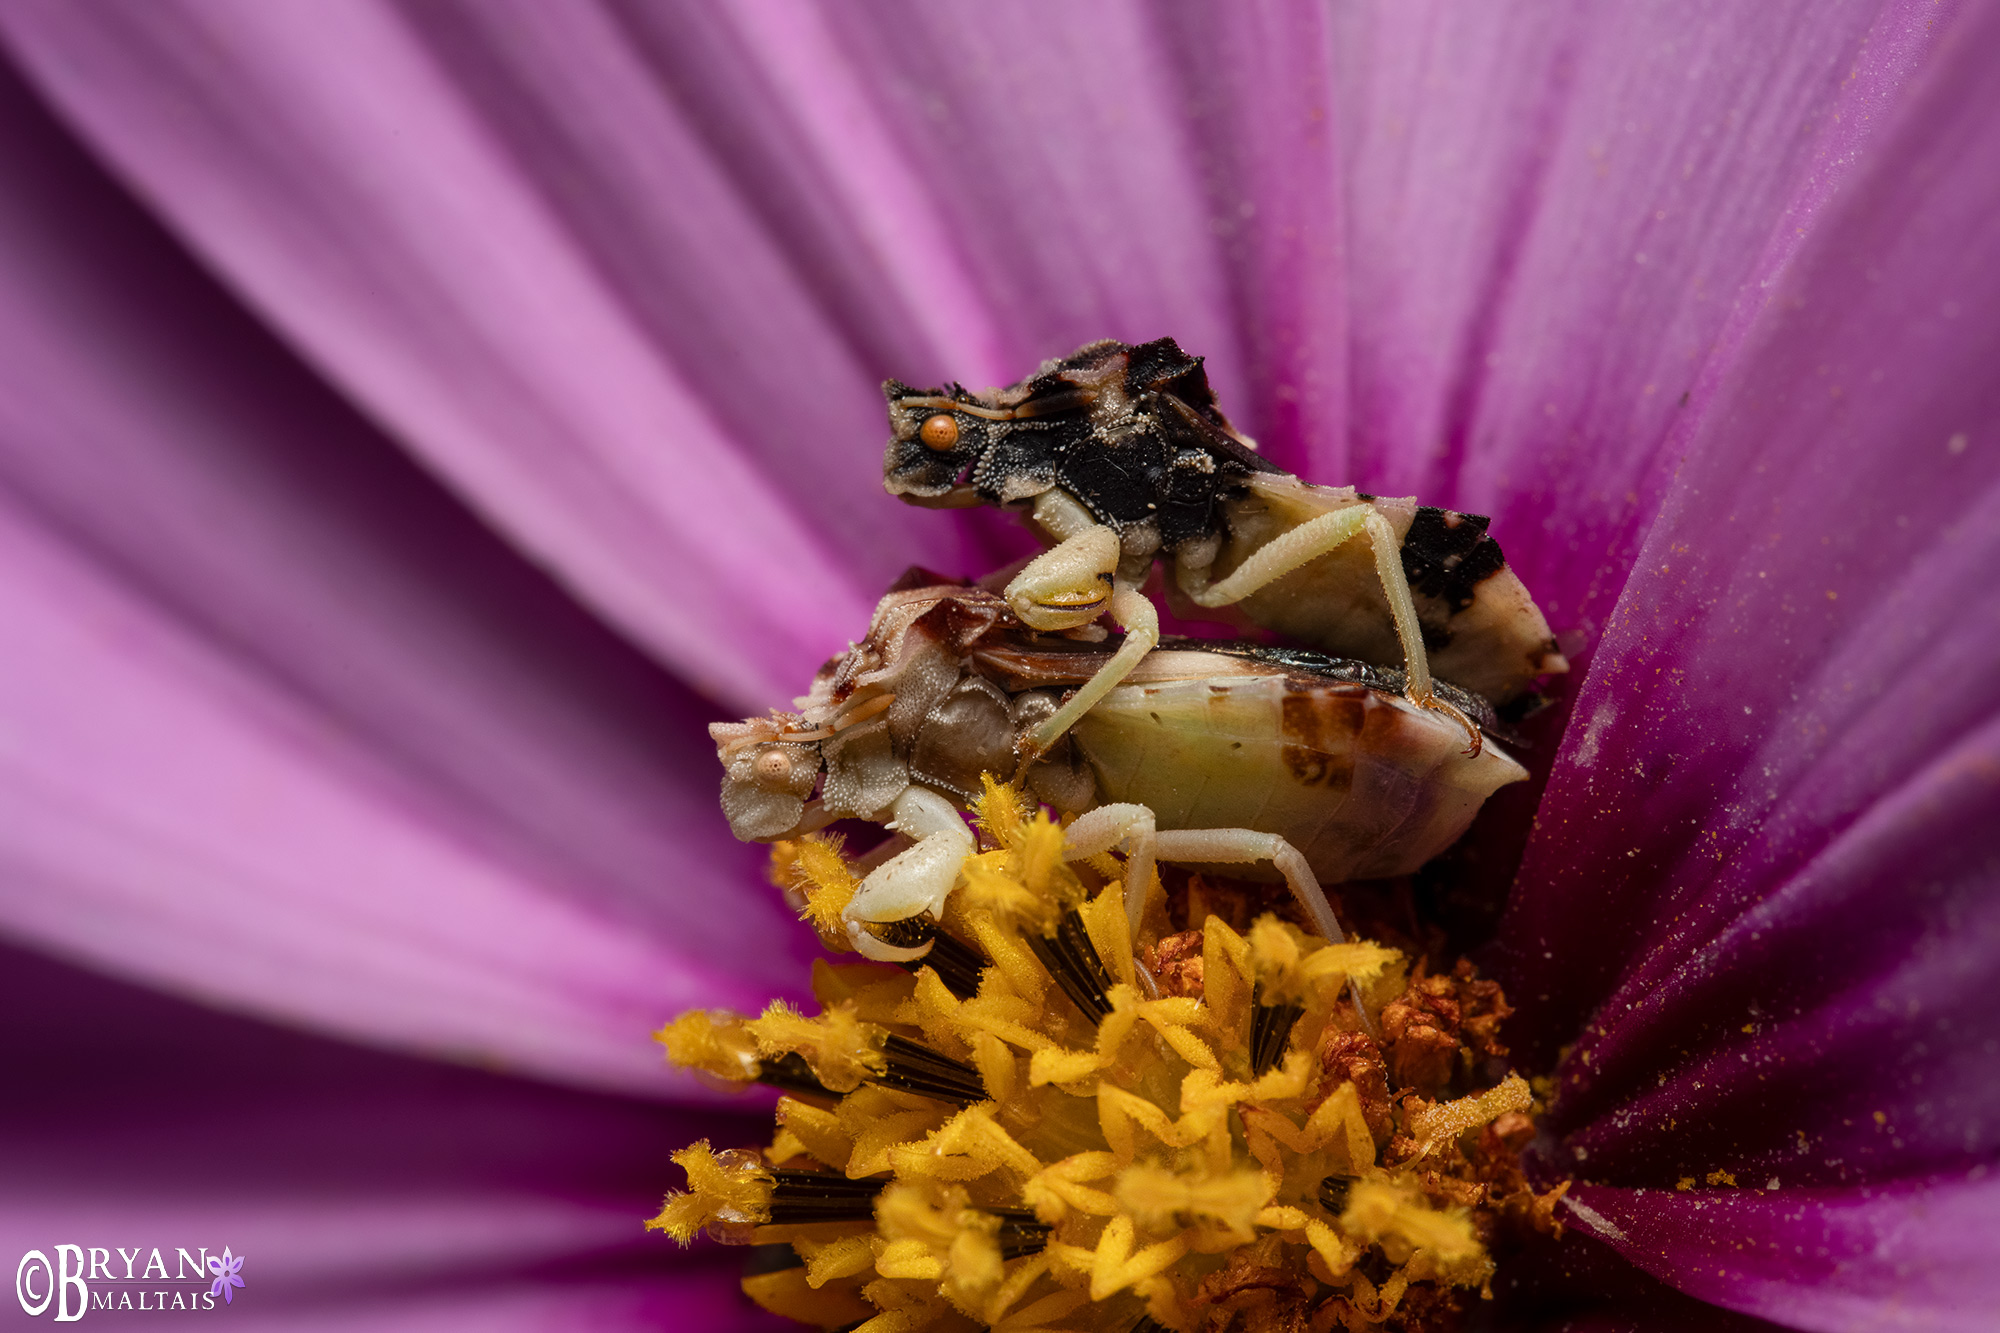 jagged ambush bugs mating pink flower backyard